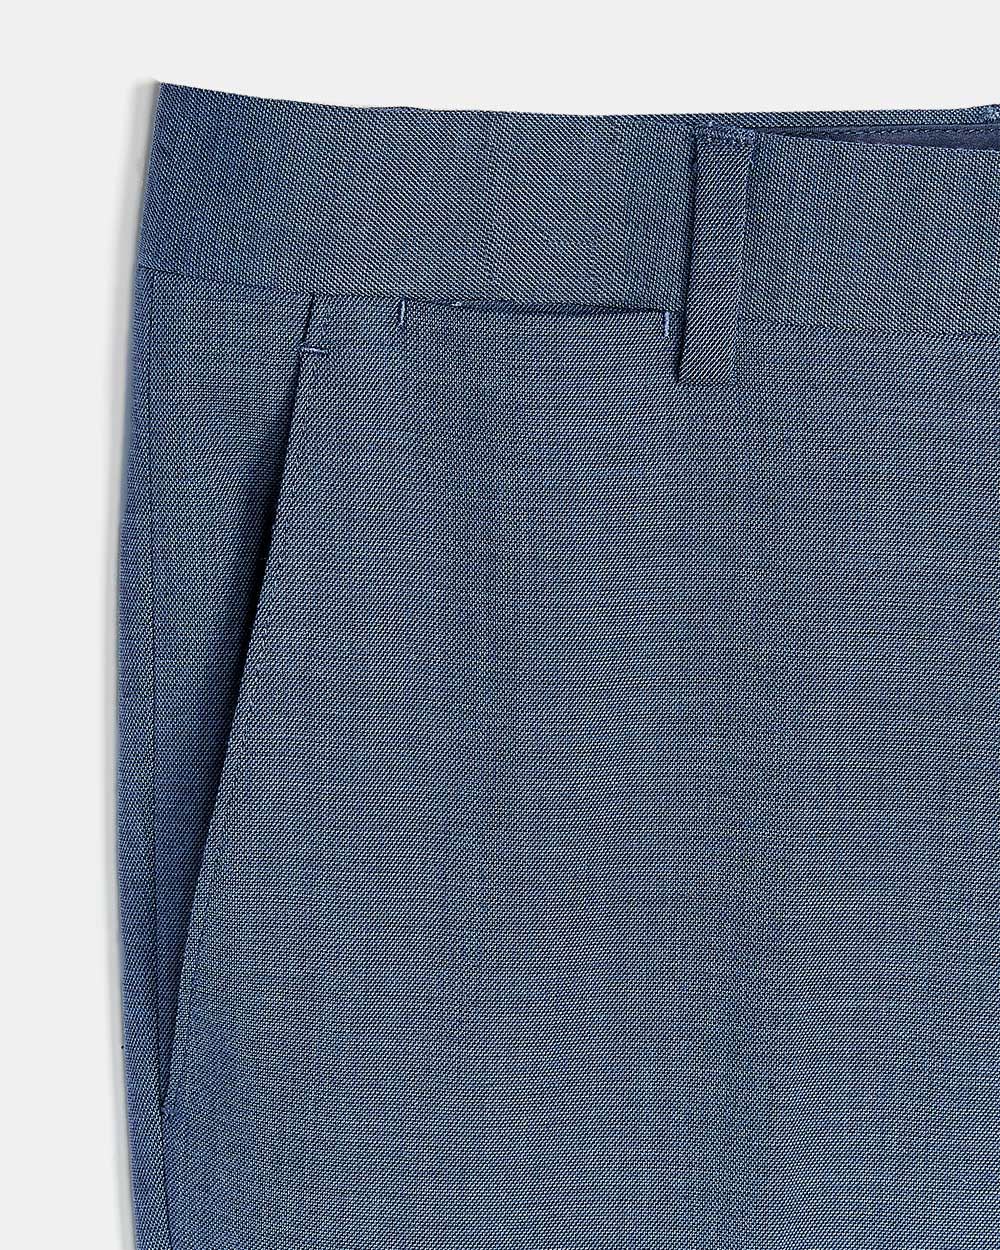 Medium Blue Suit Pant